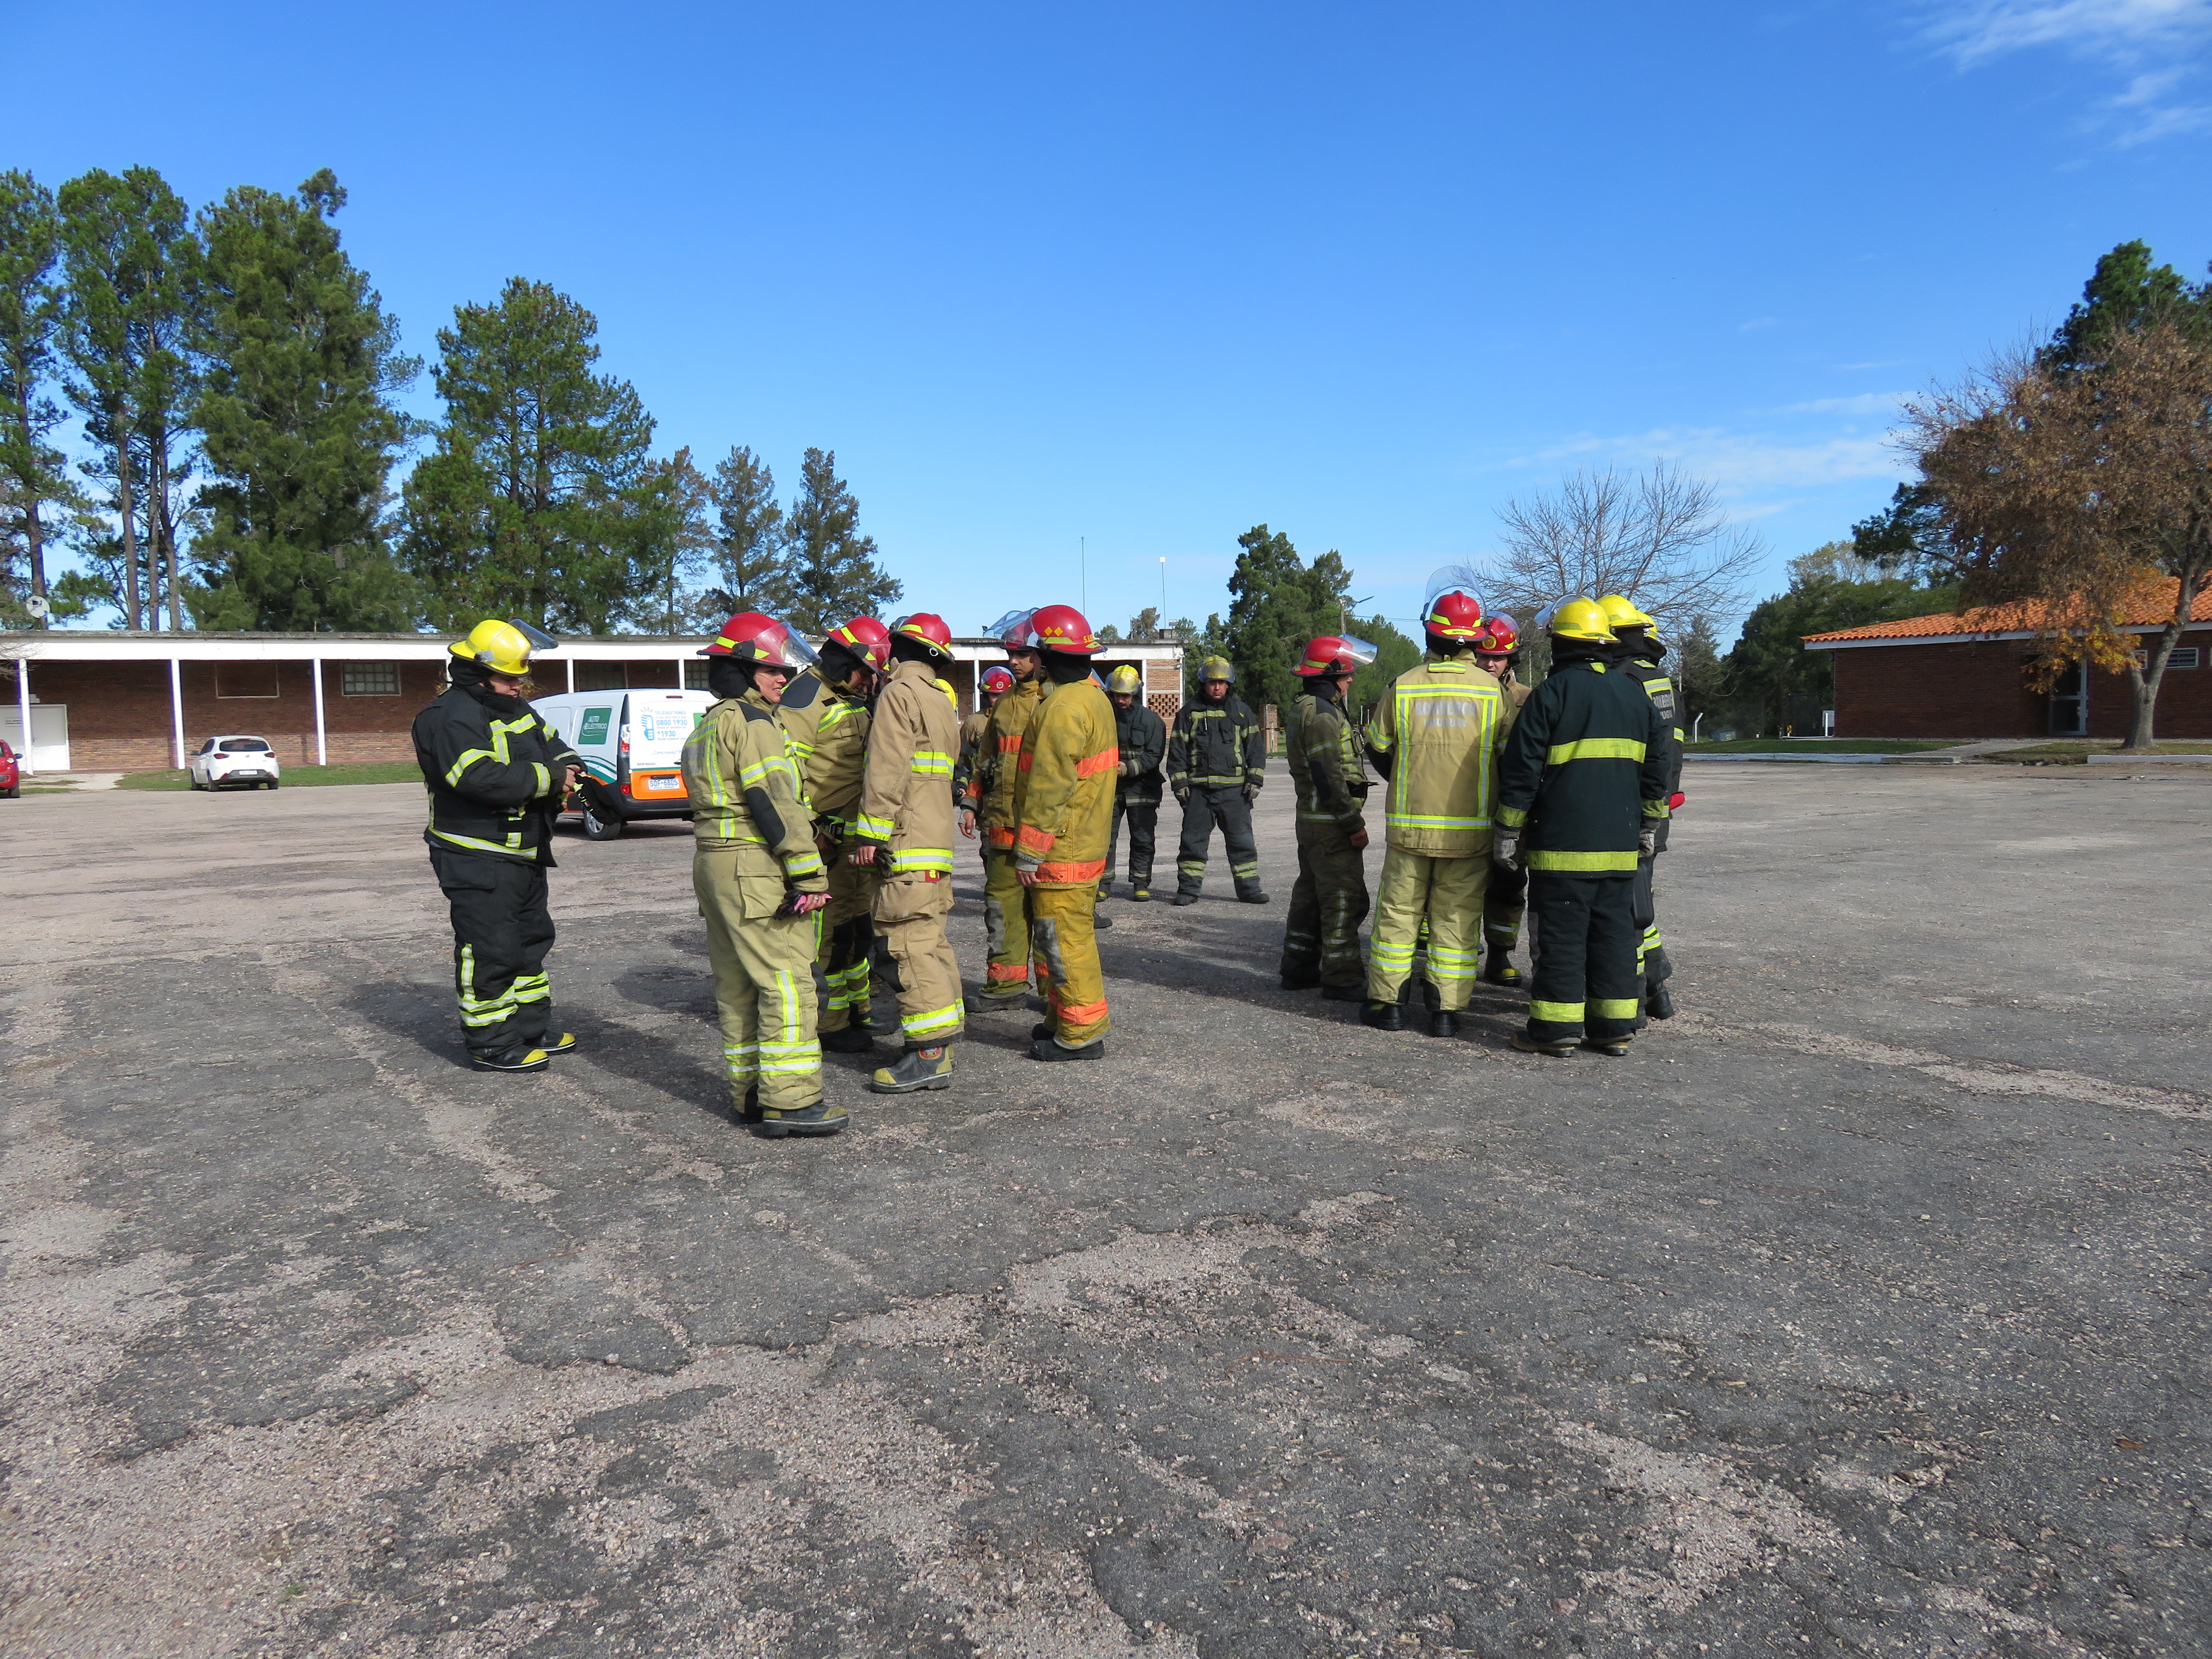 IMG_20230511_3780.jpg - El pasado jueves 11 de mayo culminó la &#034;Capacitación para bomberos sobre manejo de incidentes relacionados con la movilidad eléctrica&#034; en donde se capacitaron a 25 bomberos en la Base Aérea de Santa Bernardina del departamento de Durazno. Esta capacitación es la continuación del primer curso regional que organizó la plataforma MOVE del Programa de la Naciones Unidas para el Medio Ambiente a finales de 2022 en Paraguay, donde participaron y se formaron dos bomberos instructores de Uruguay.